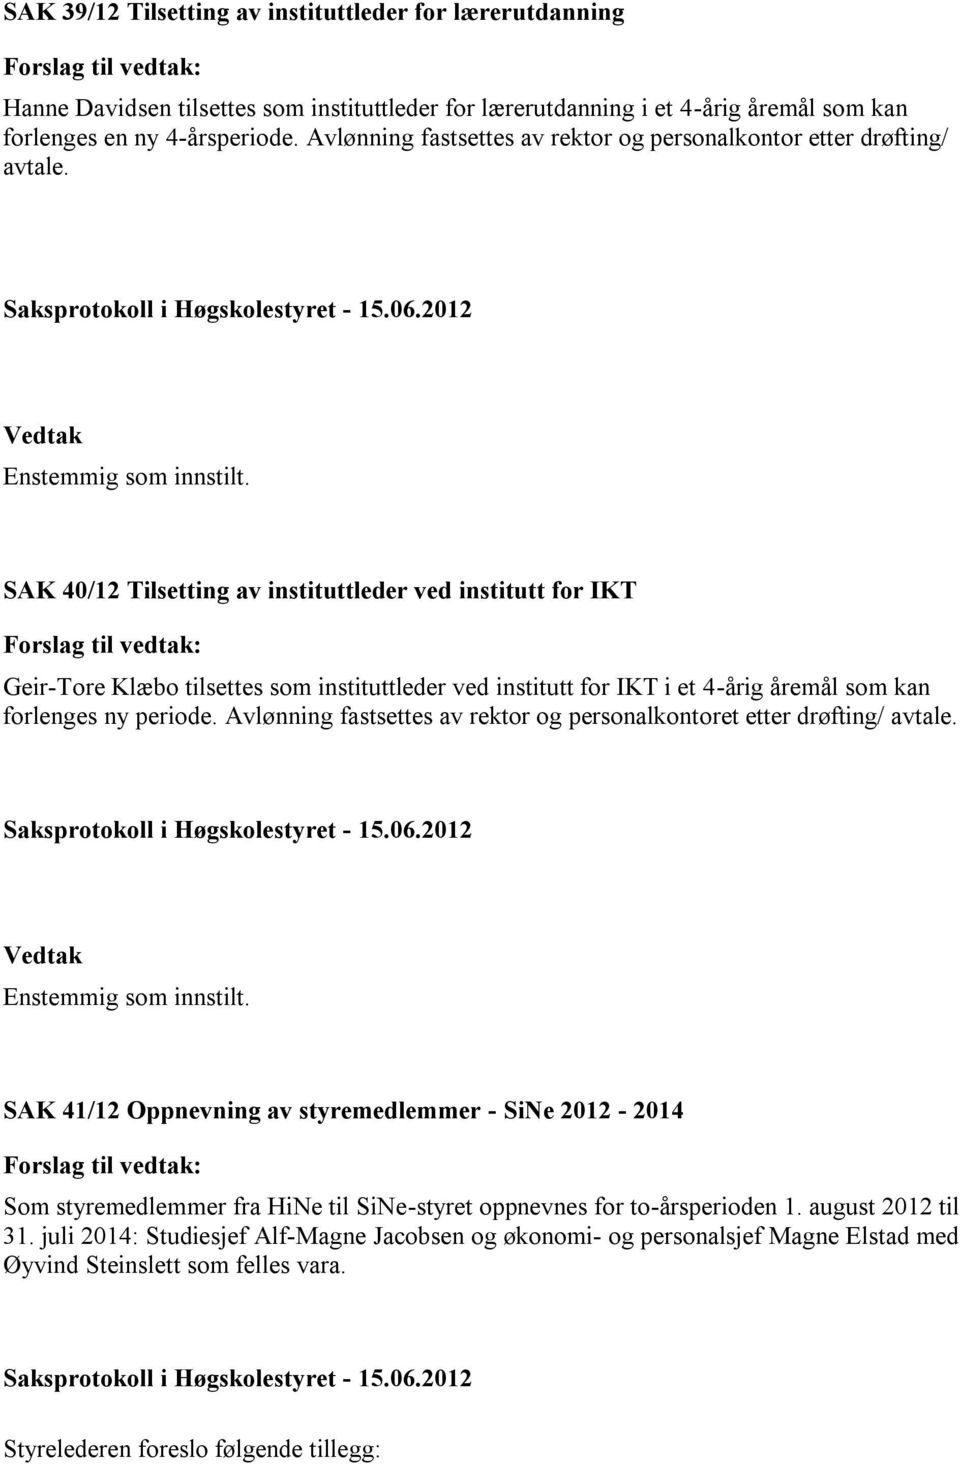 SAK 40/12 Tilsetting av instituttleder ved institutt for IKT Geir-Tore Klæbo tilsettes som instituttleder ved institutt for IKT i et 4-årig åremål som kan forlenges ny periode.